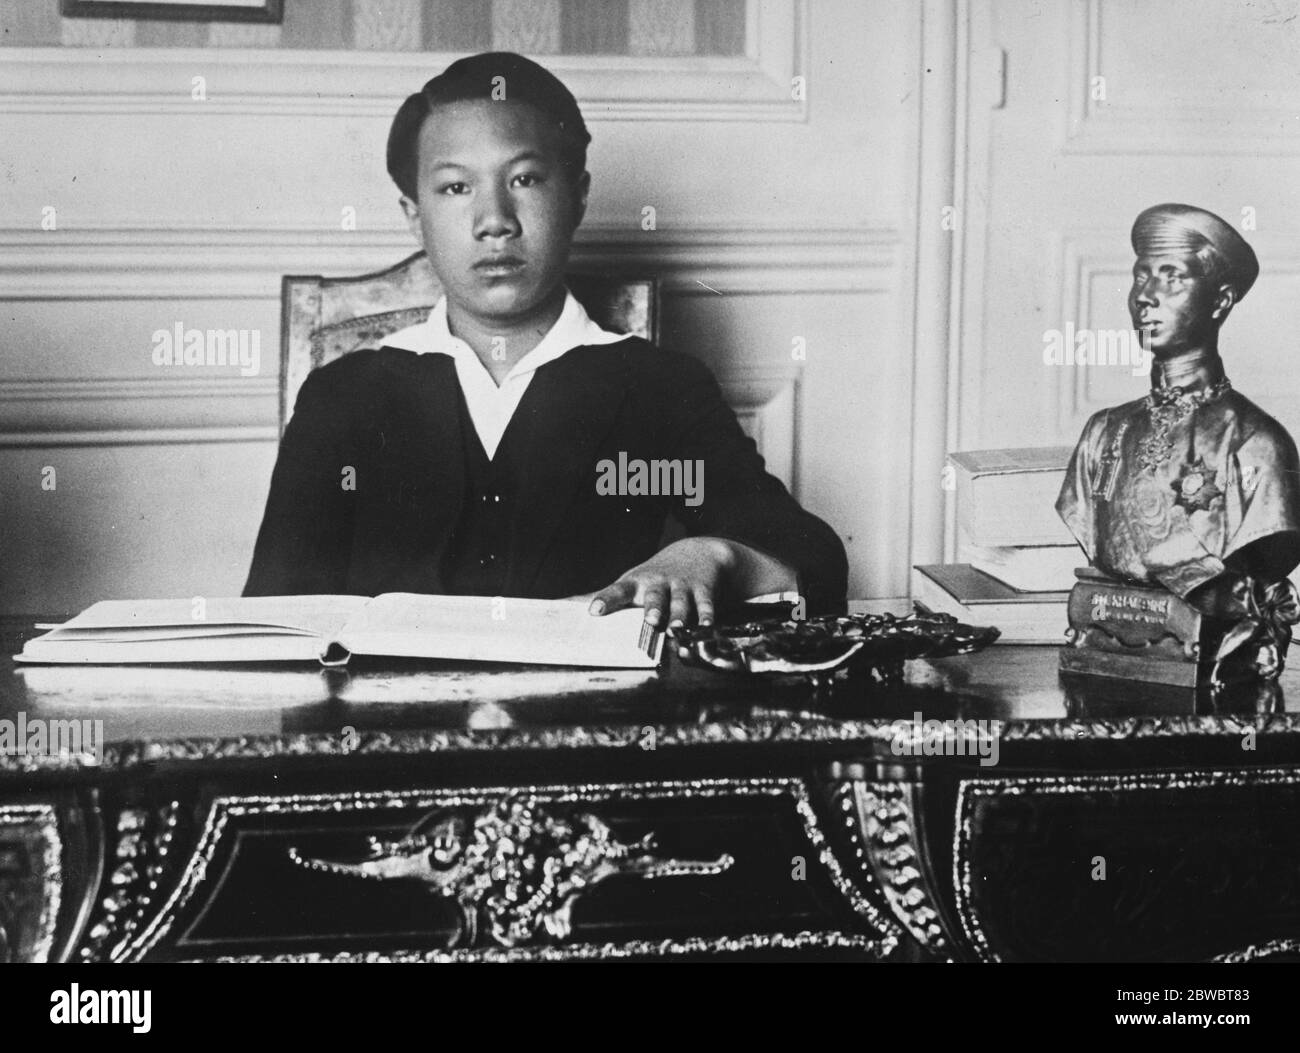 L'empereur Bao Dai d'Annam commence ses études à Paris . Le plus jeune empereur du monde Bao Dai qui a seulement 12 ans, est vu commencer ses études après son retour d'Annam où il était présent aux funérailles de son père . 29 mars 1926 Banque D'Images